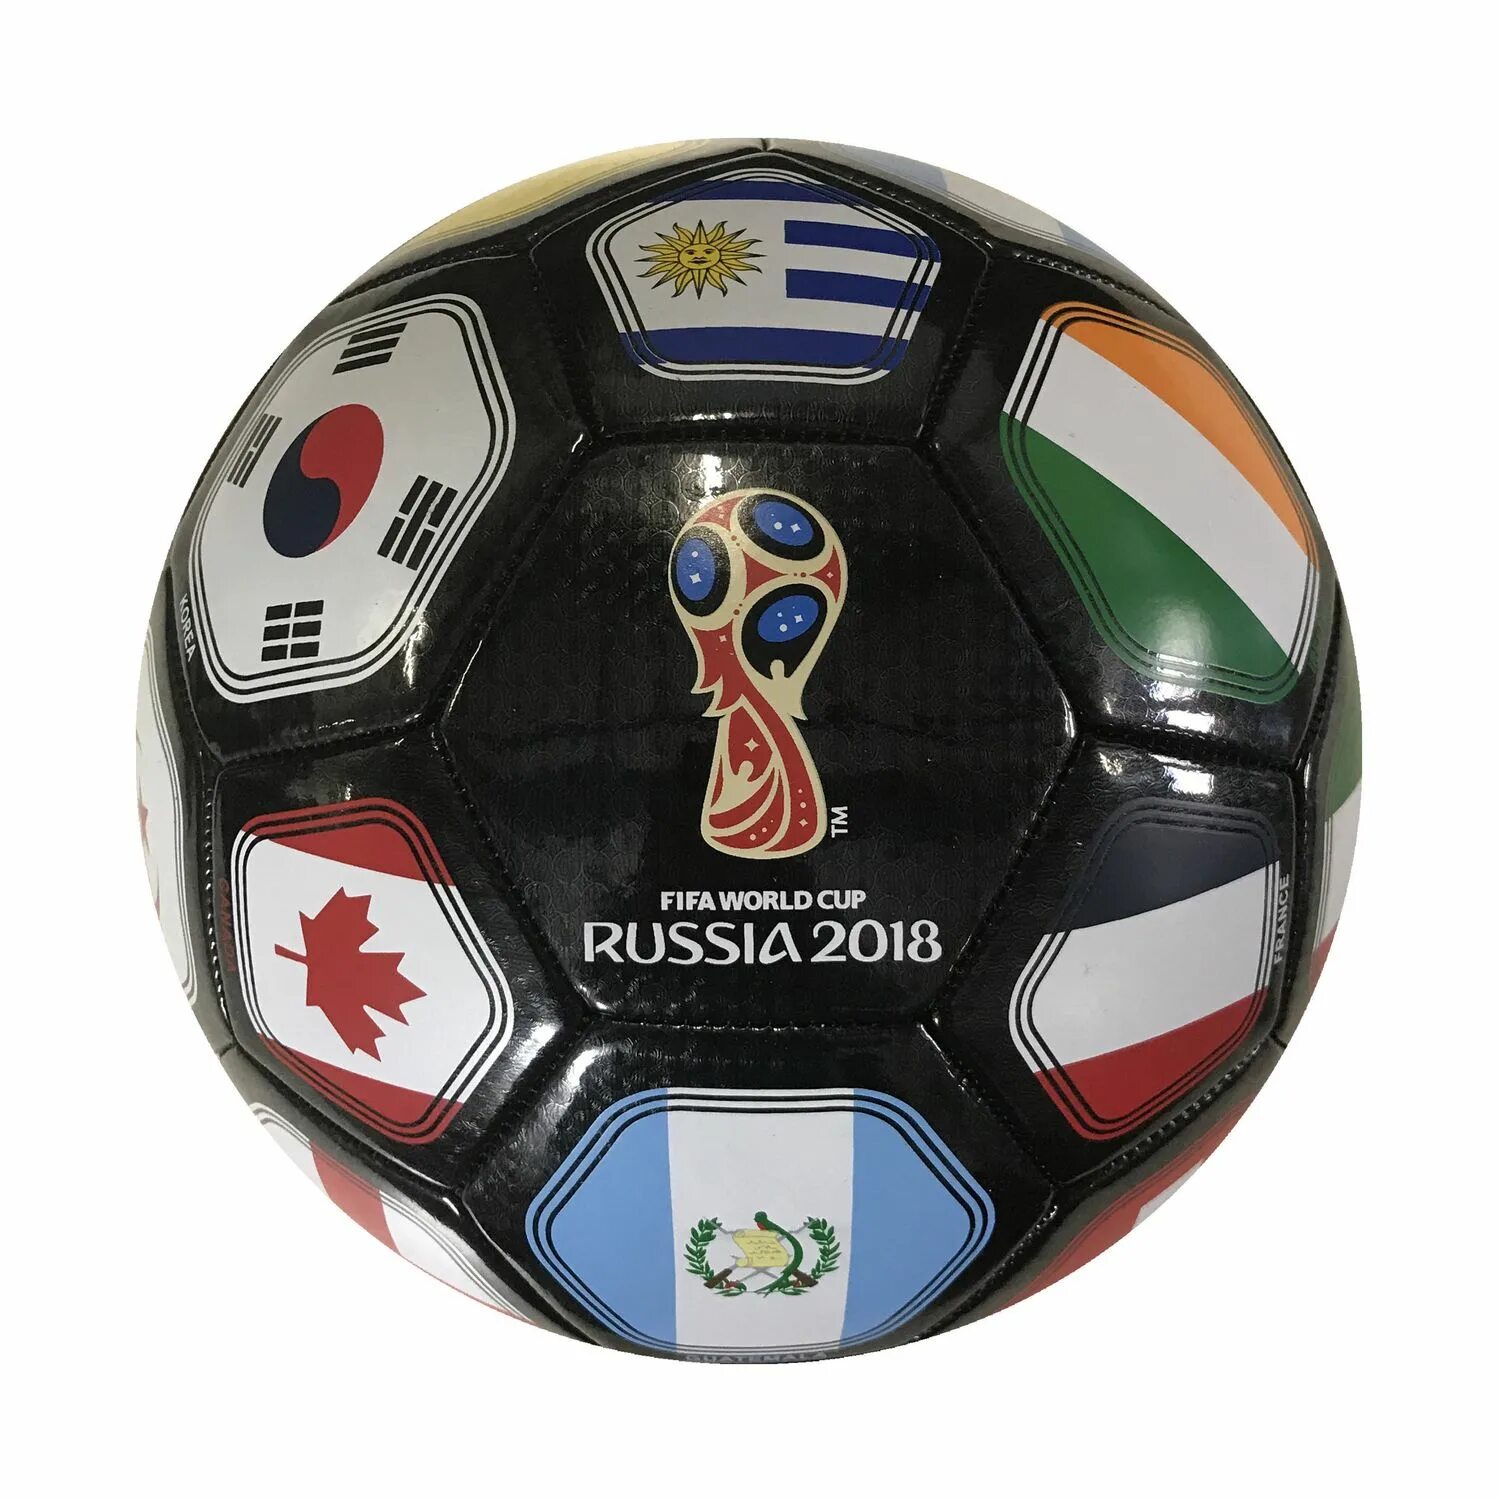 Мяч ФИФА 2018. Мяч ФИФА ворлд кап. FIFA World Cup 2018 мяч. Футбольный мяч Россия 2018.